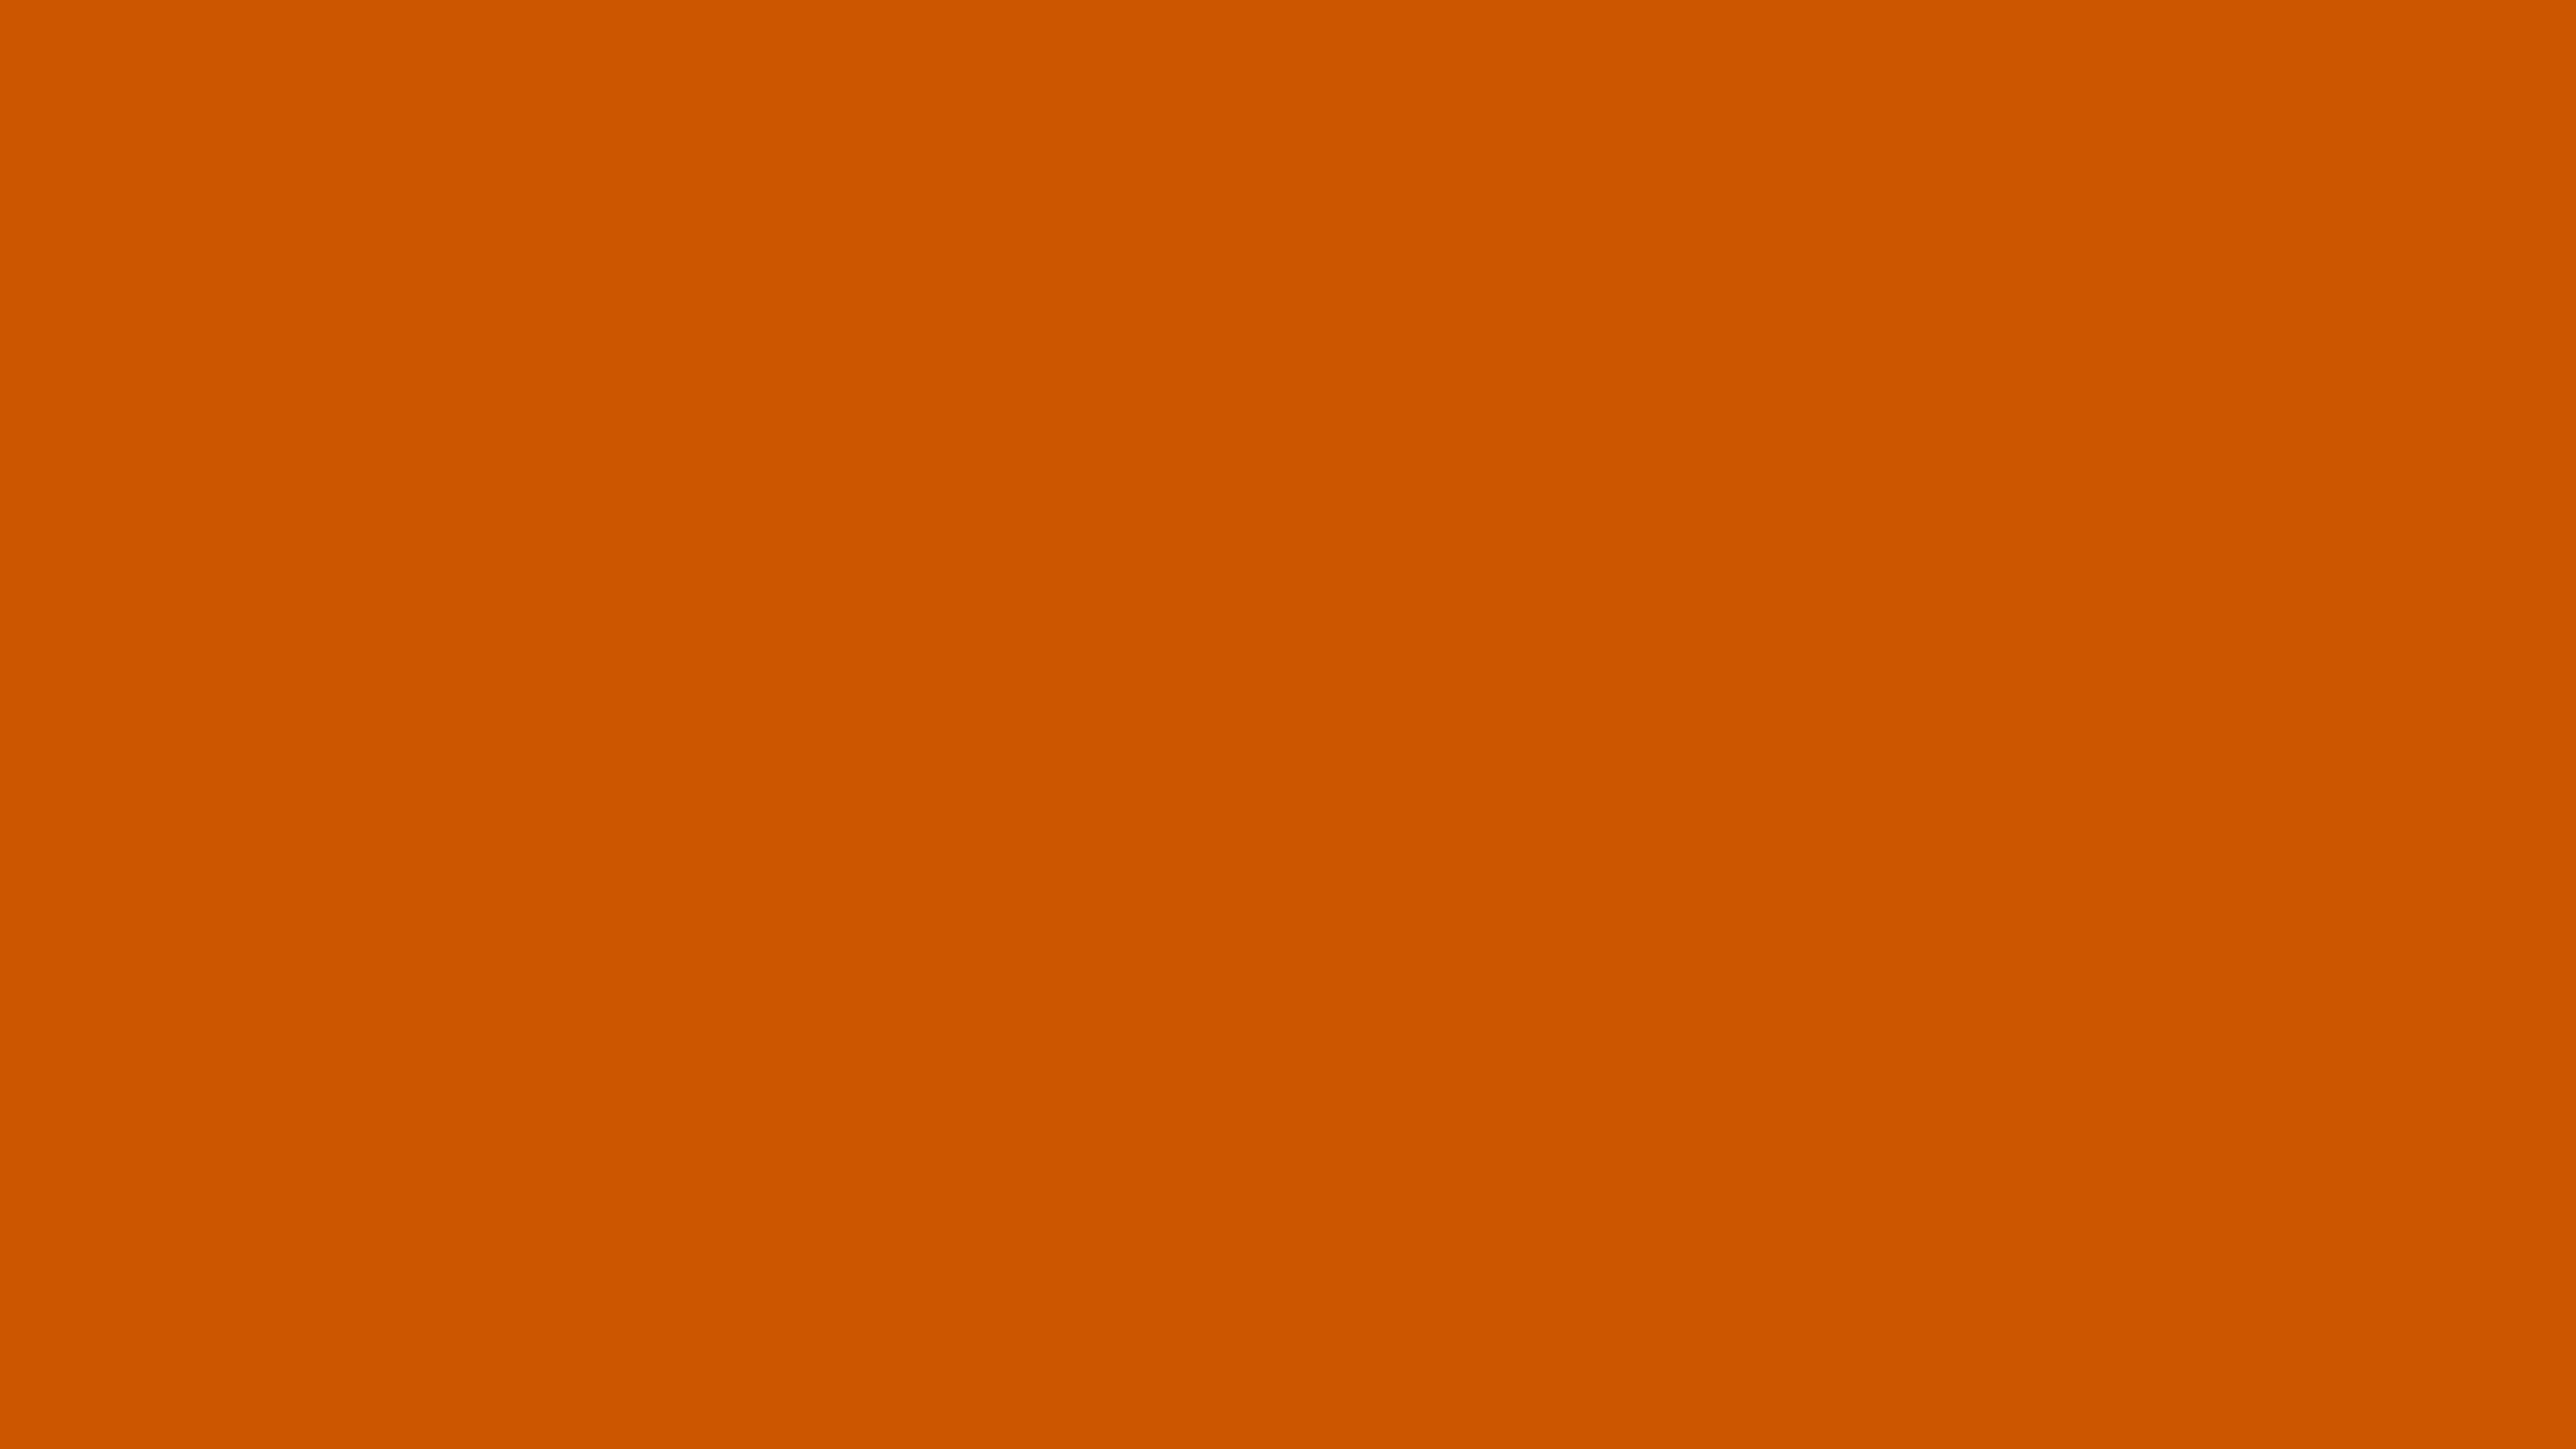 Burnt Orange Solid Color Background Image. Free Image Generator